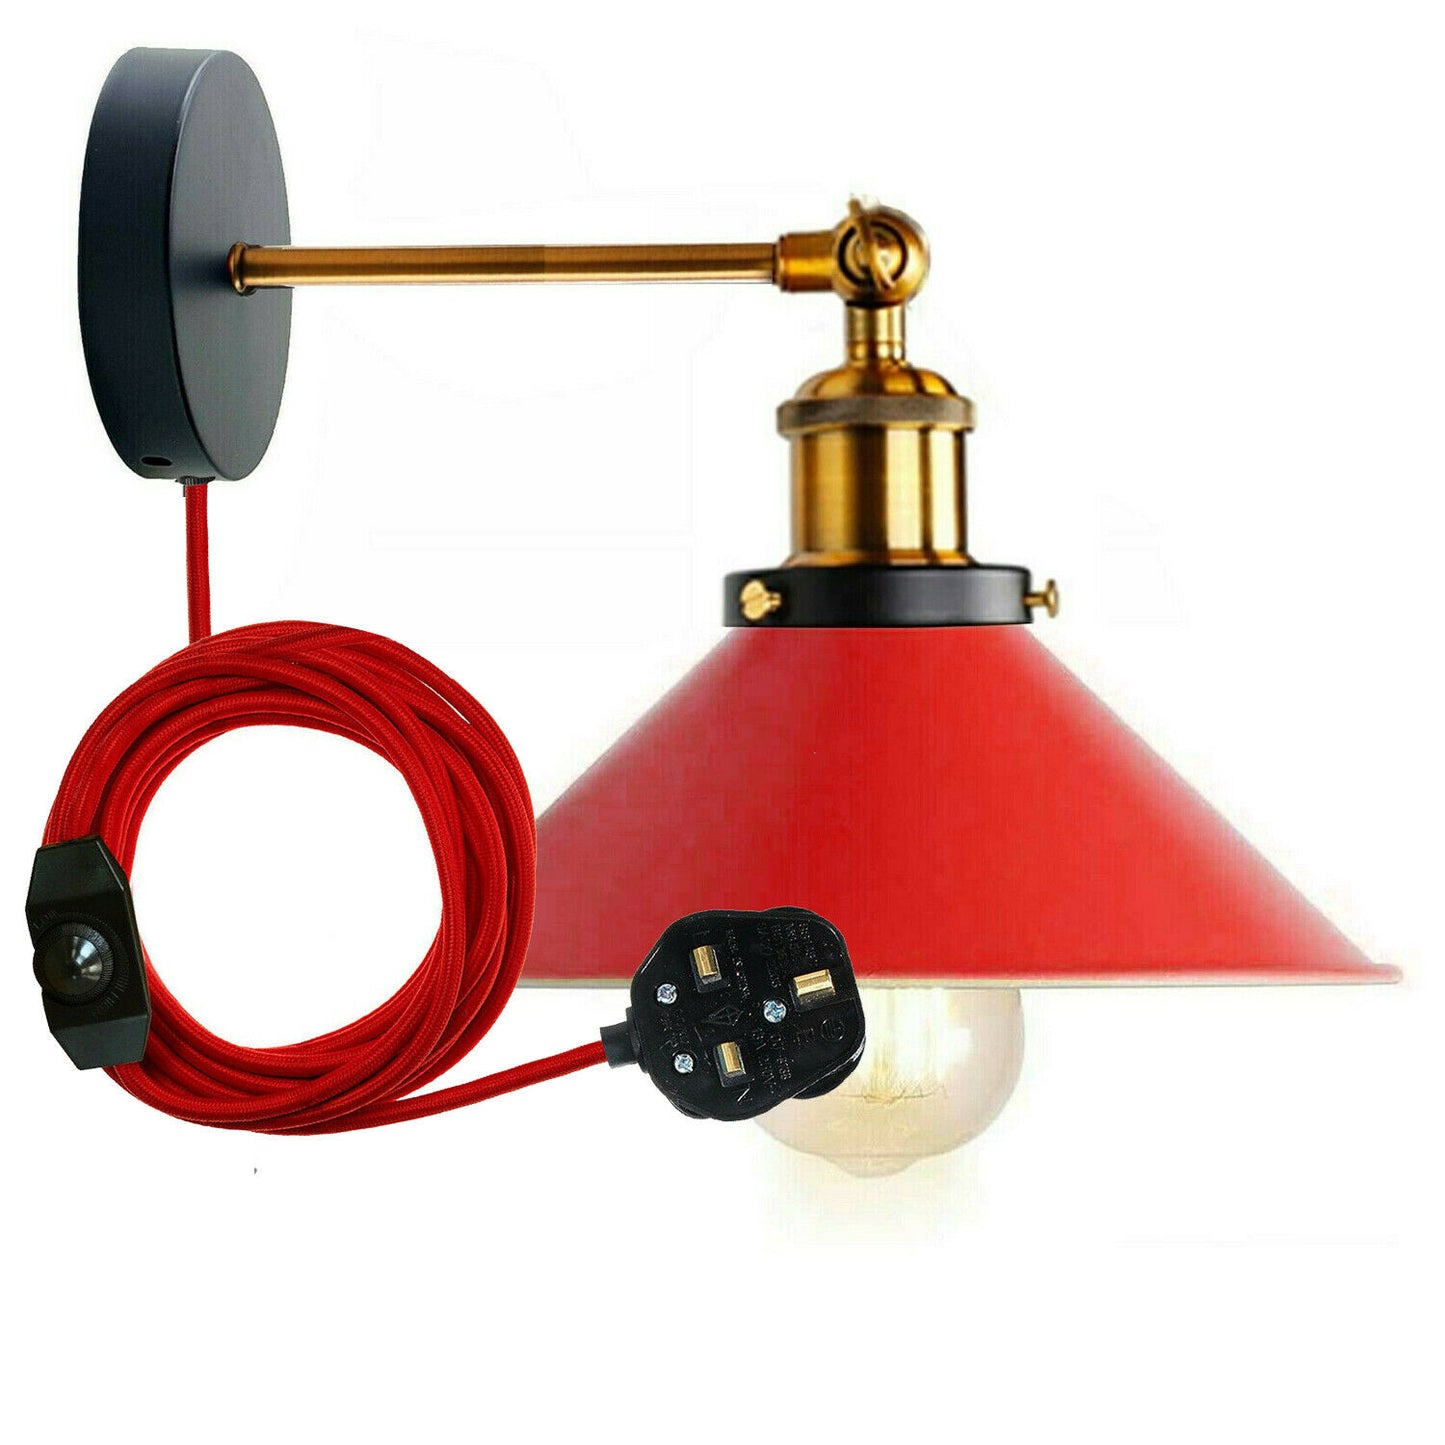  Plug in Wall Lamp